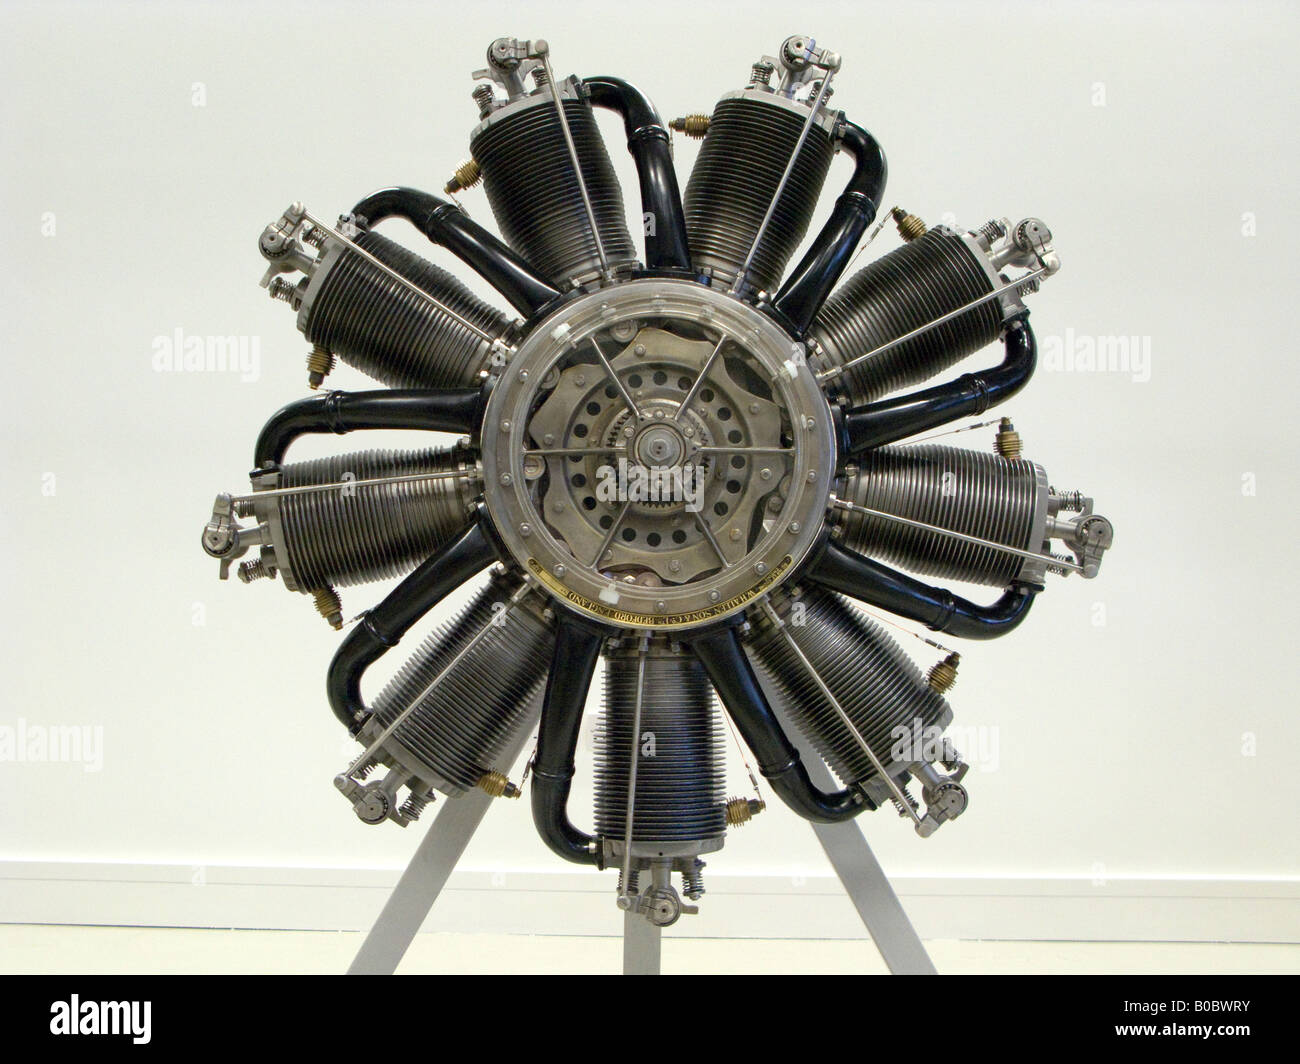 W H Allen 9 cilindro giratorio del motor aero Duxford Imperial War Museum Foto de stock